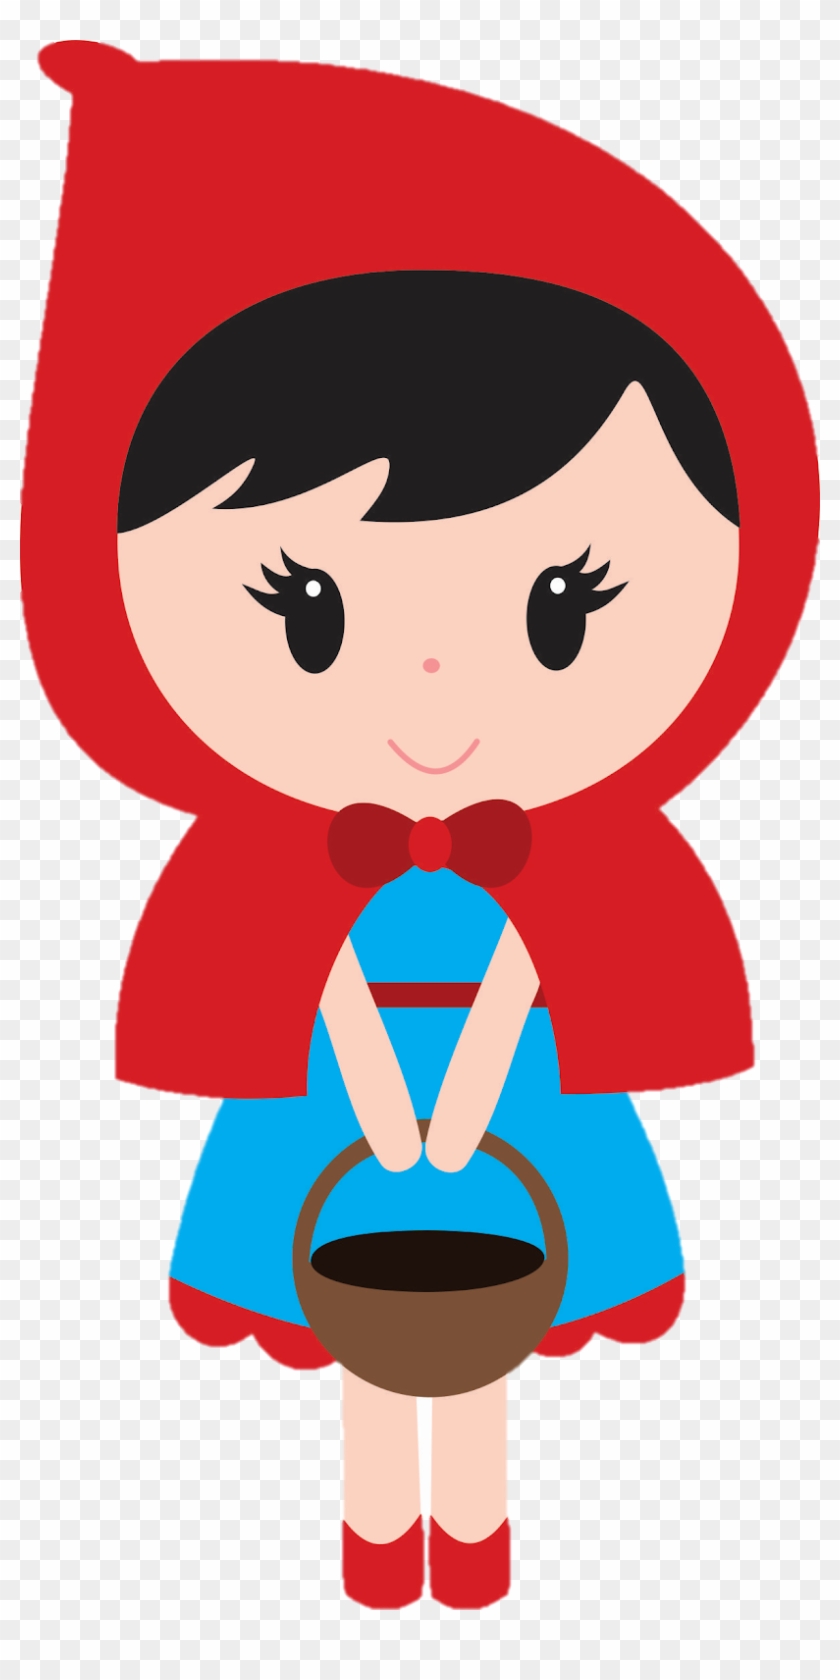 Little Red Riding Hood Free Clipart - Imagens Da Chapeuzinho Vermelho #725243